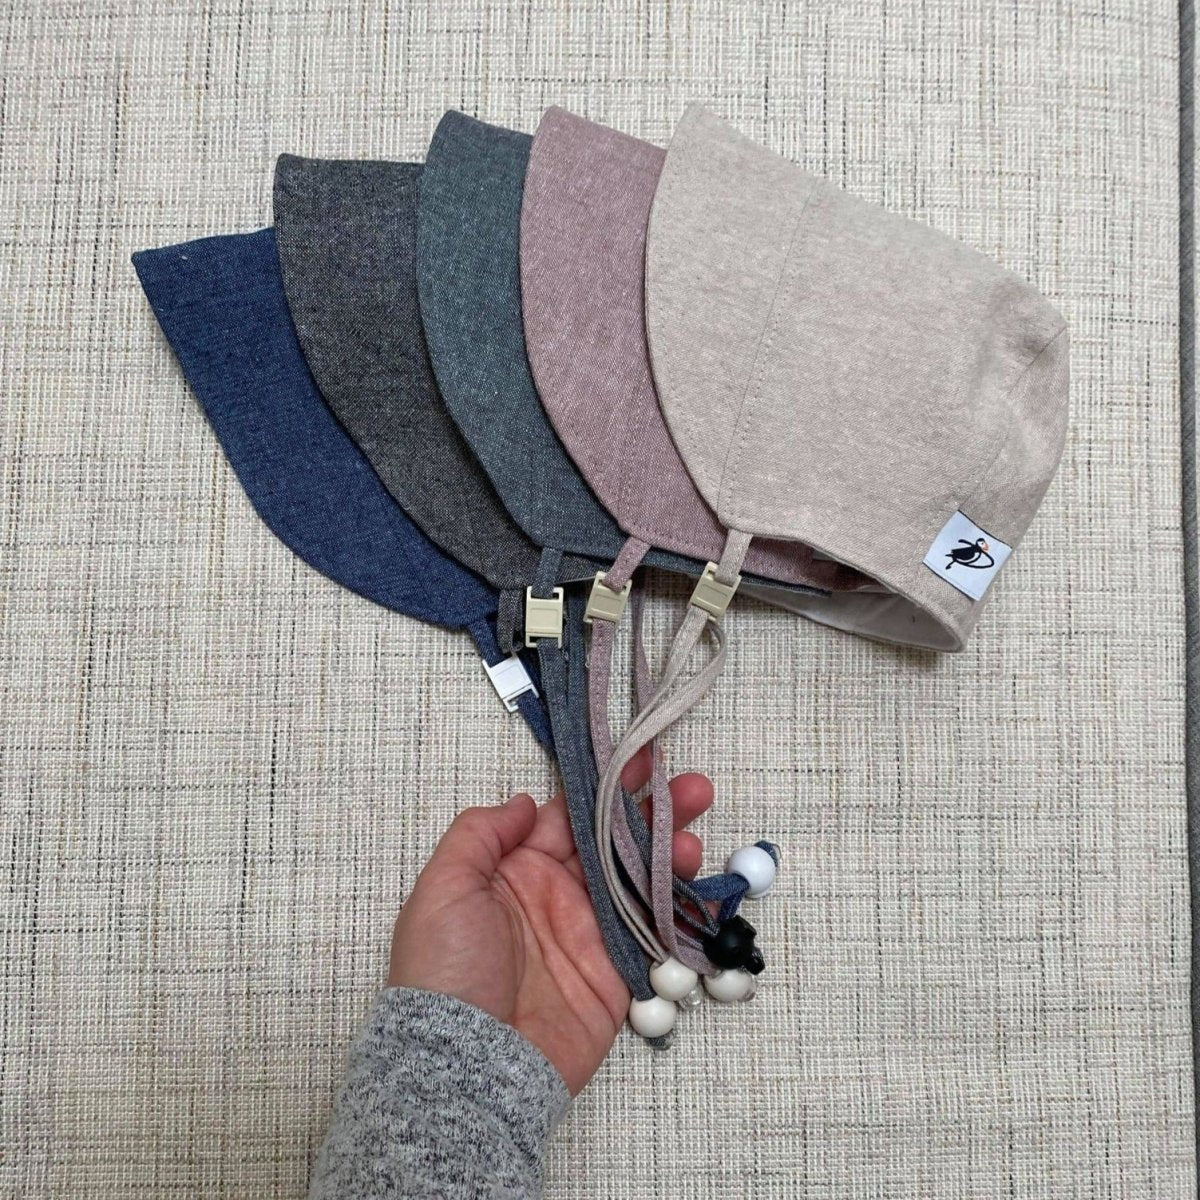 Puffin Gear Charcoal Linen Fall Bonnet - Baby Carrier AccessoriesLittle Zen One4157017515